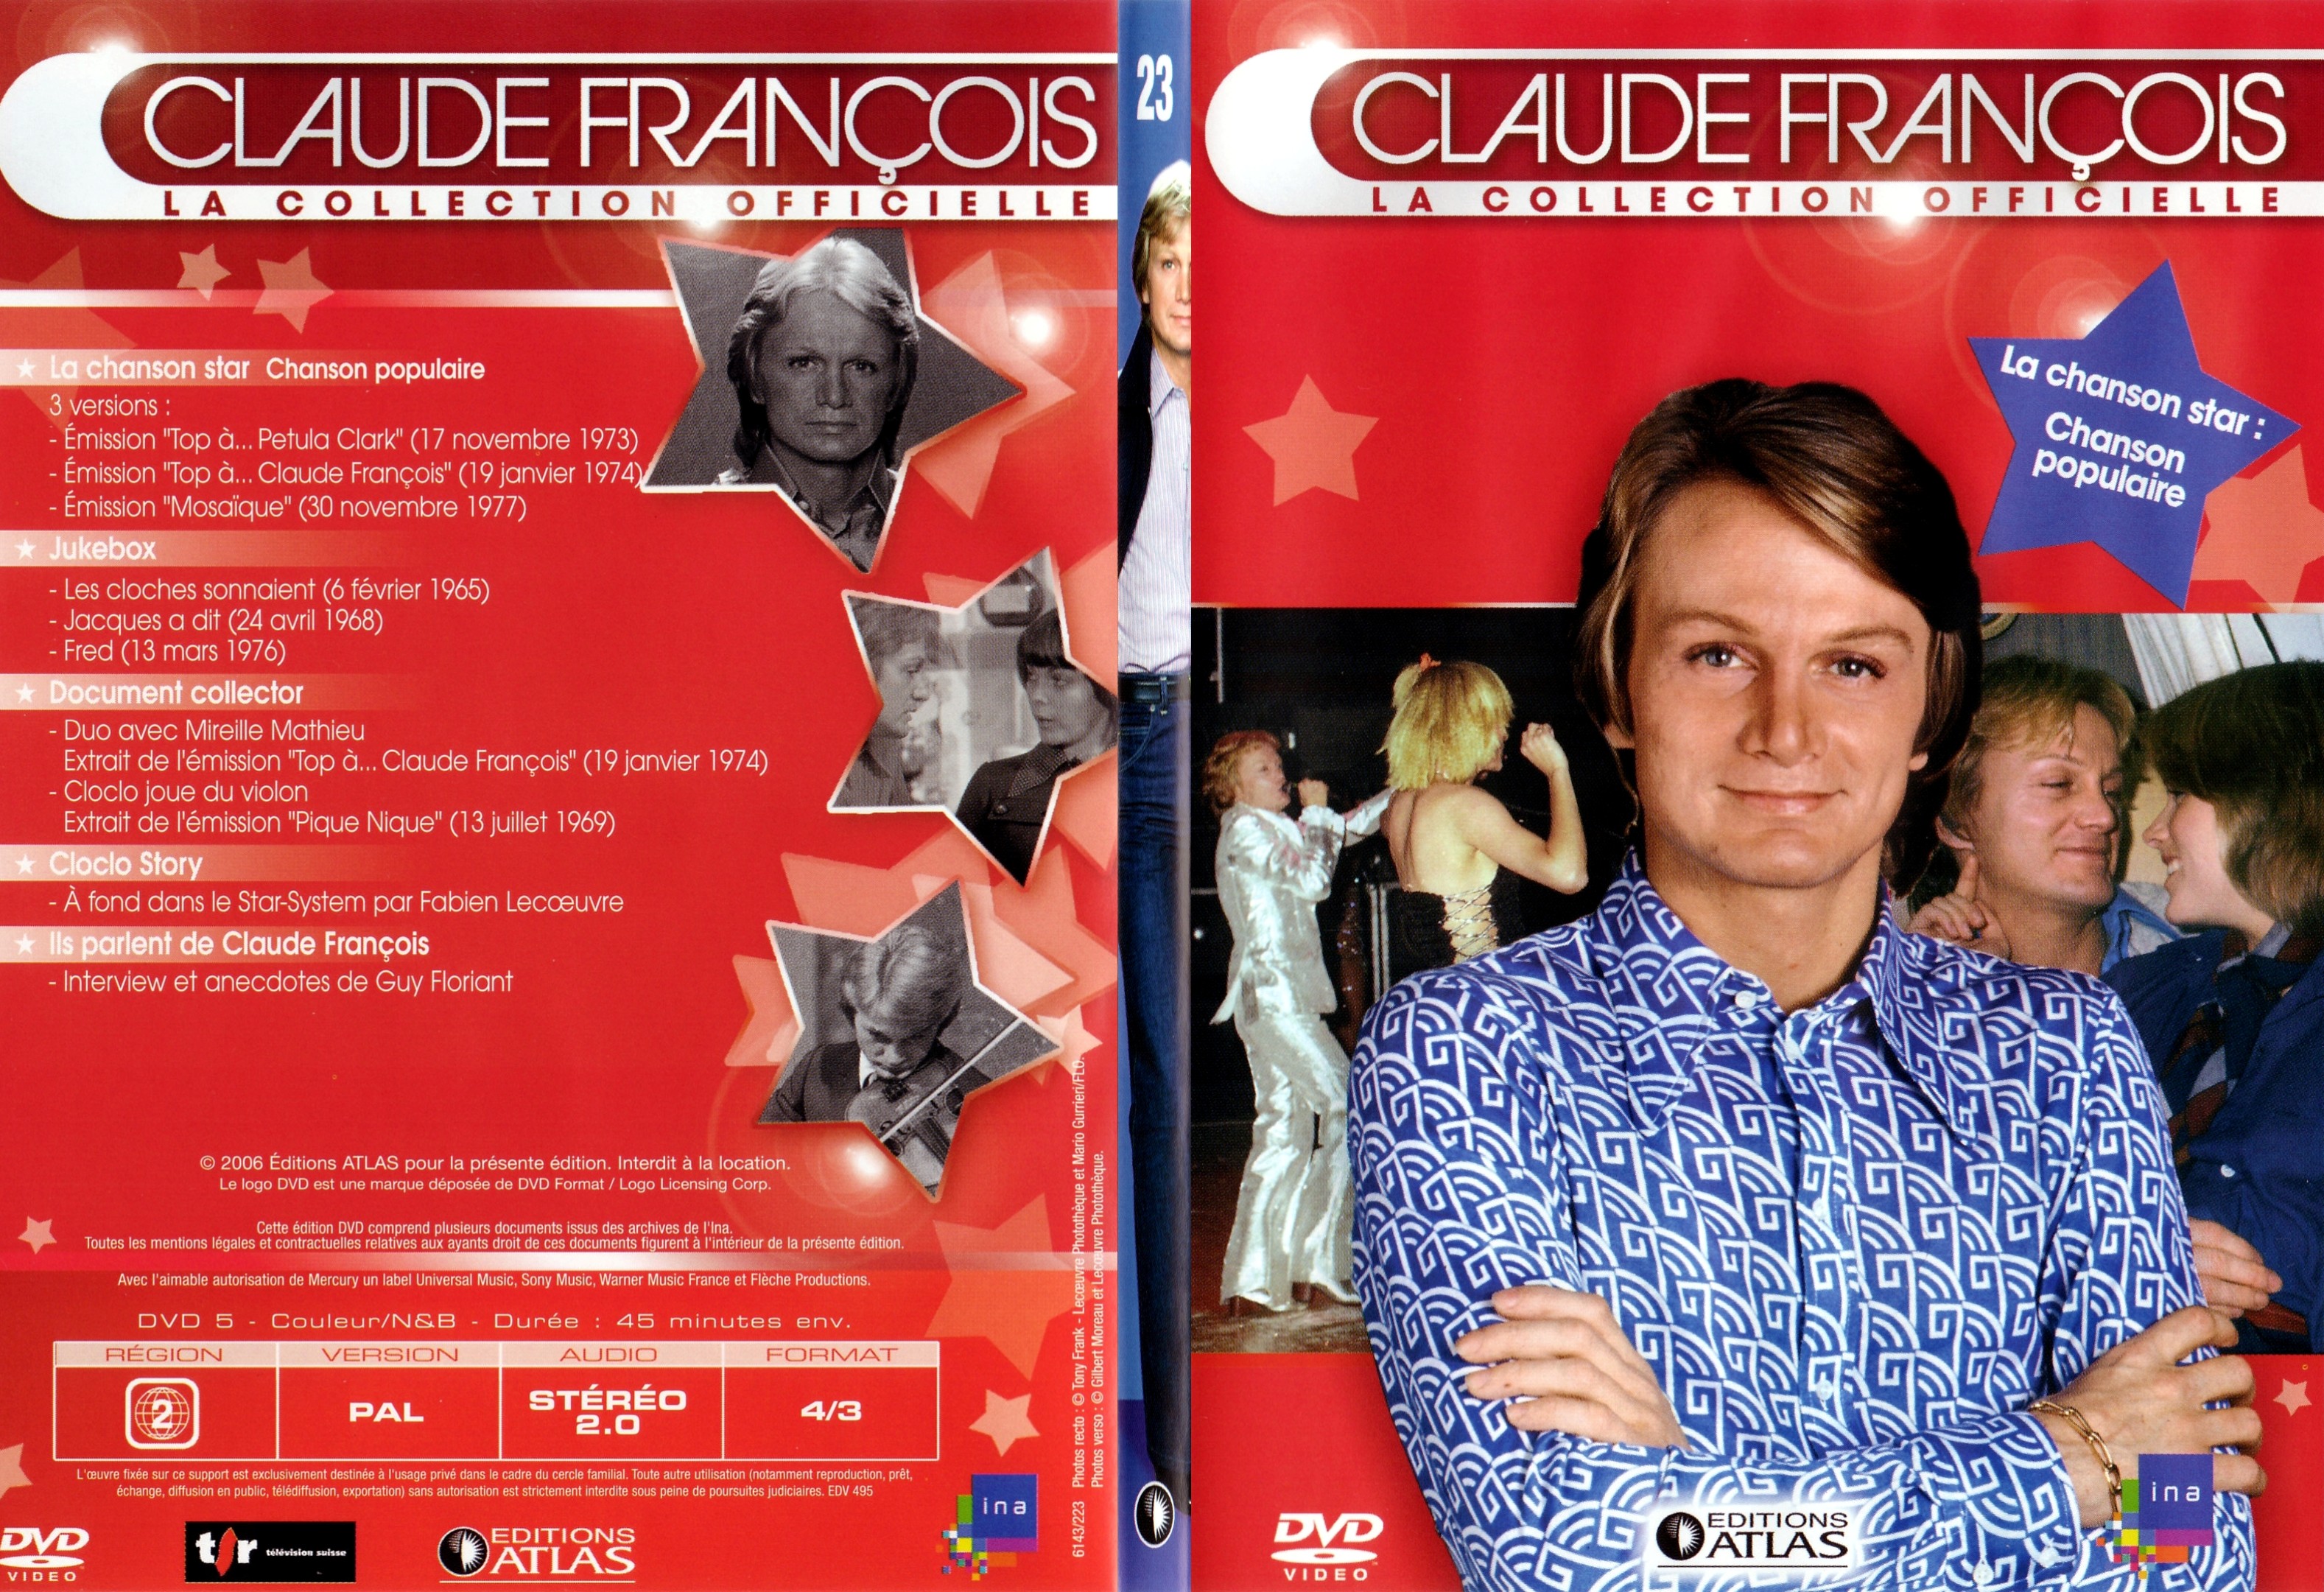 Jaquette DVD Claude francois le collection officielle vol 23 - SLIM